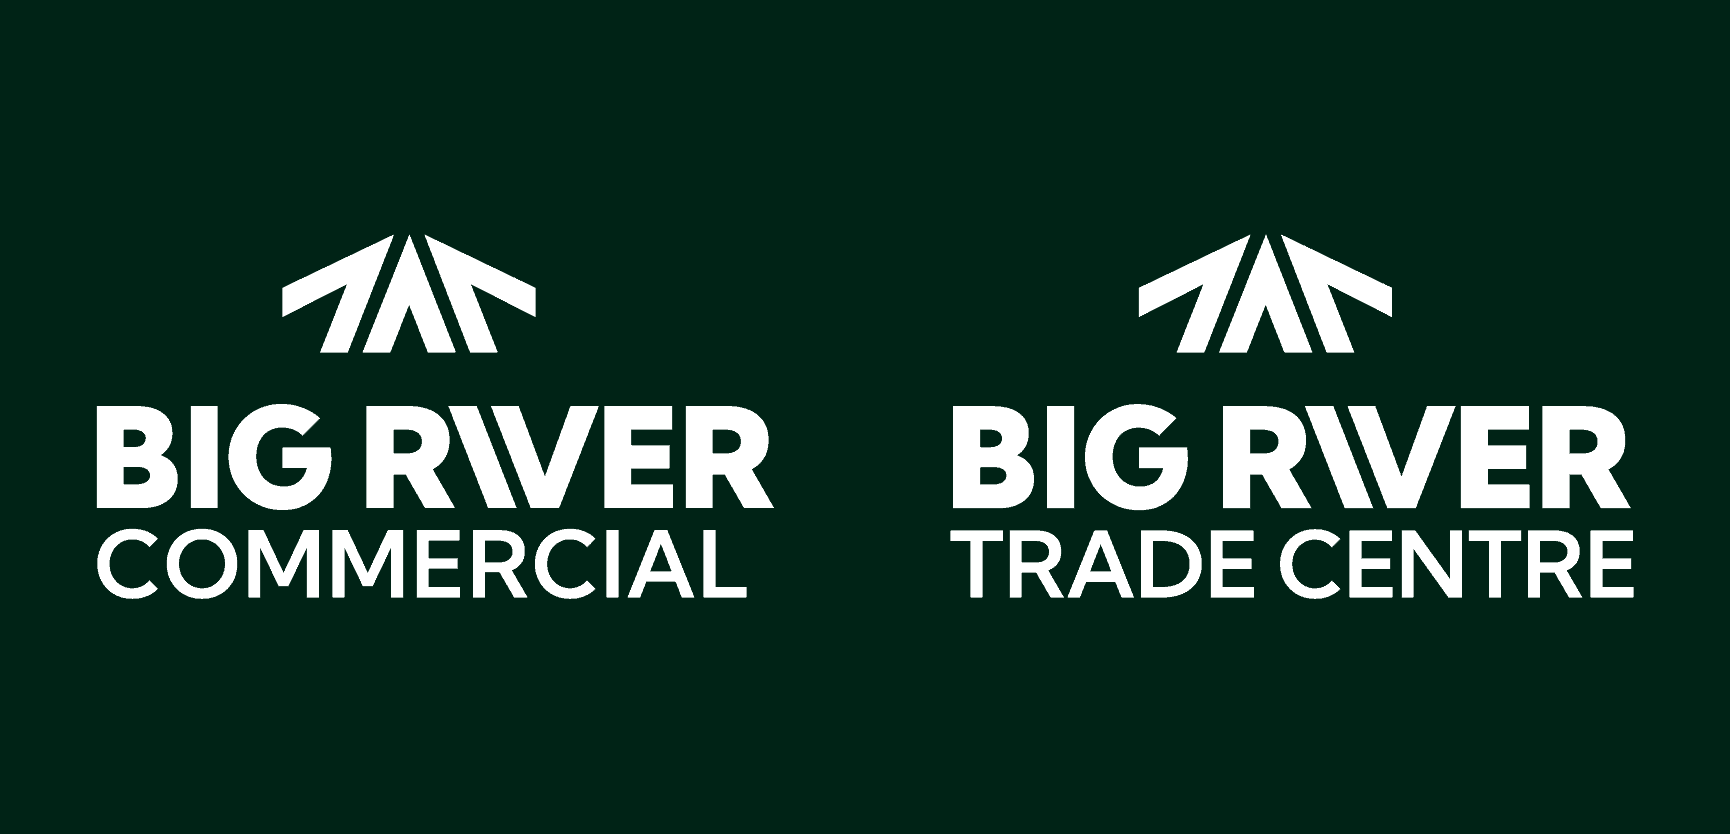 Big River Commercial, Big River Trade Centre